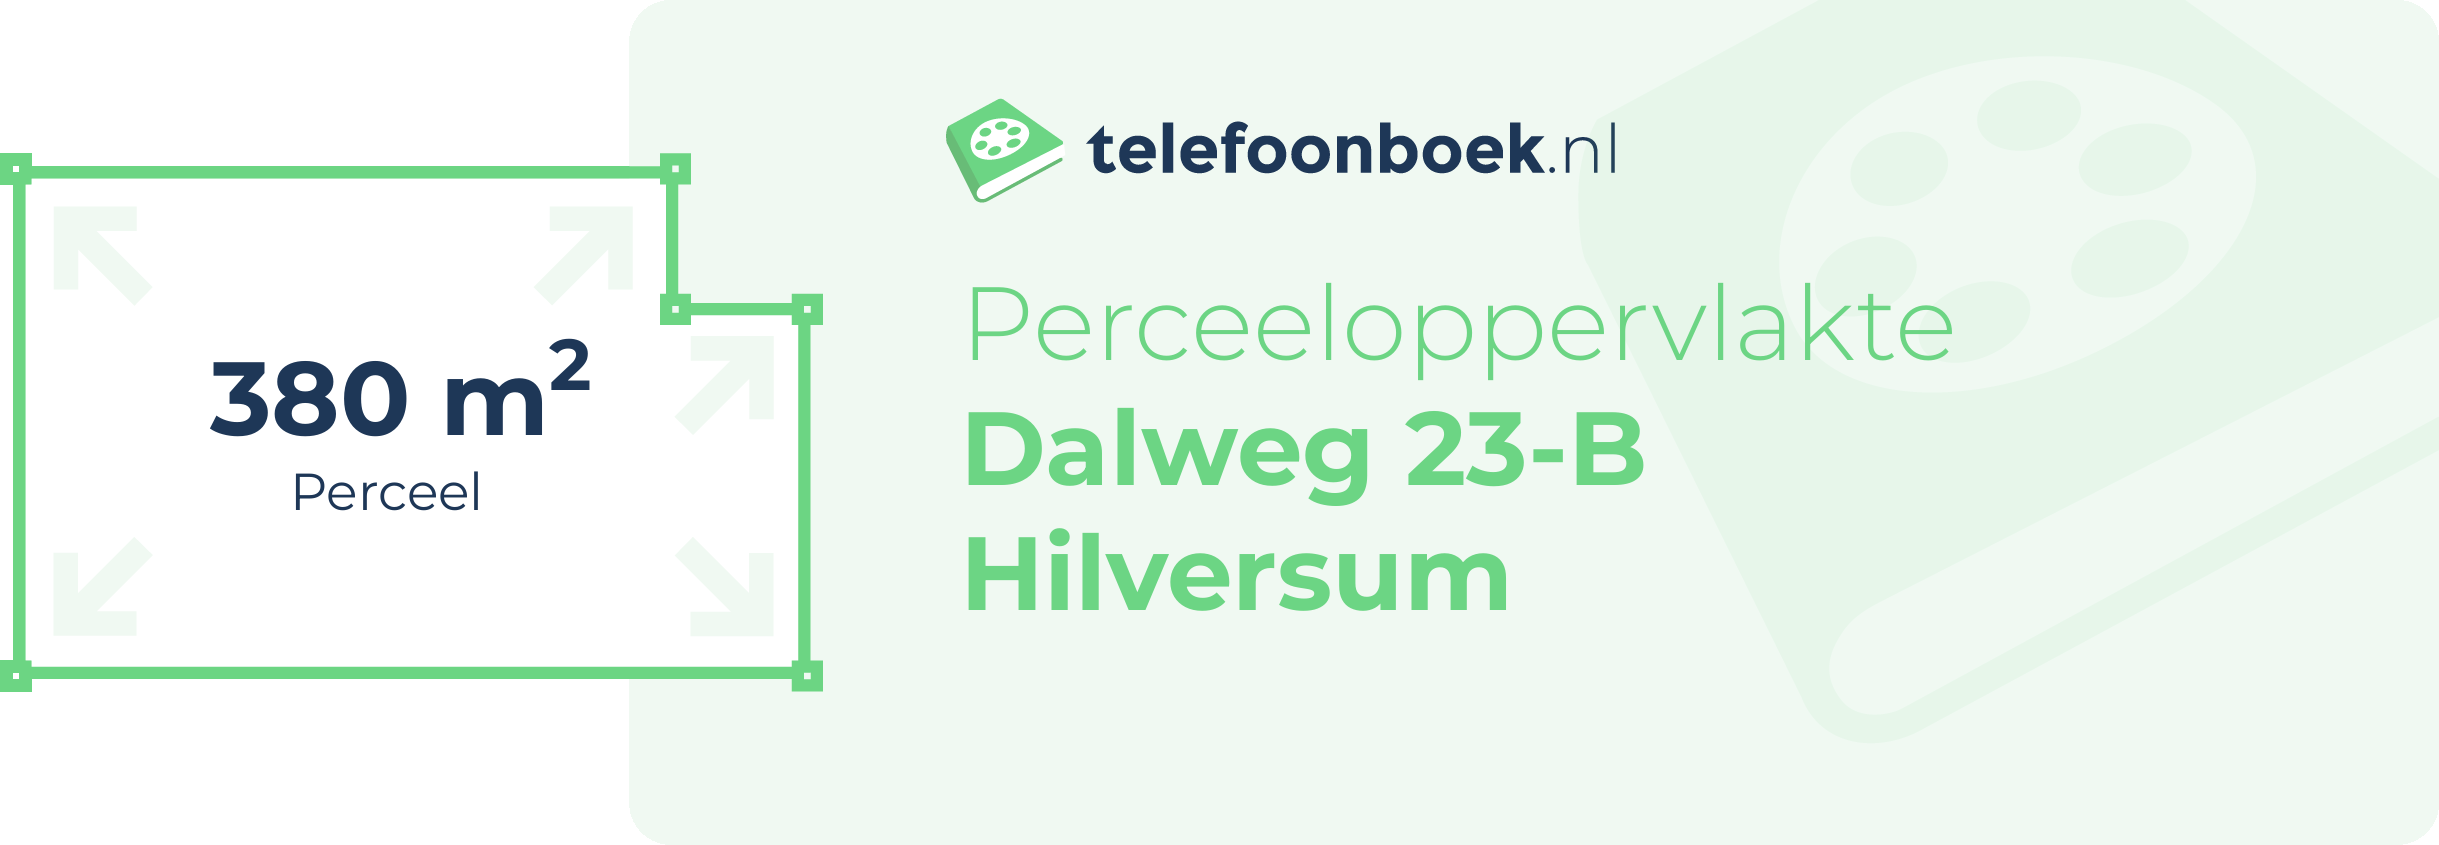 Perceeloppervlakte Dalweg 23-B Hilversum